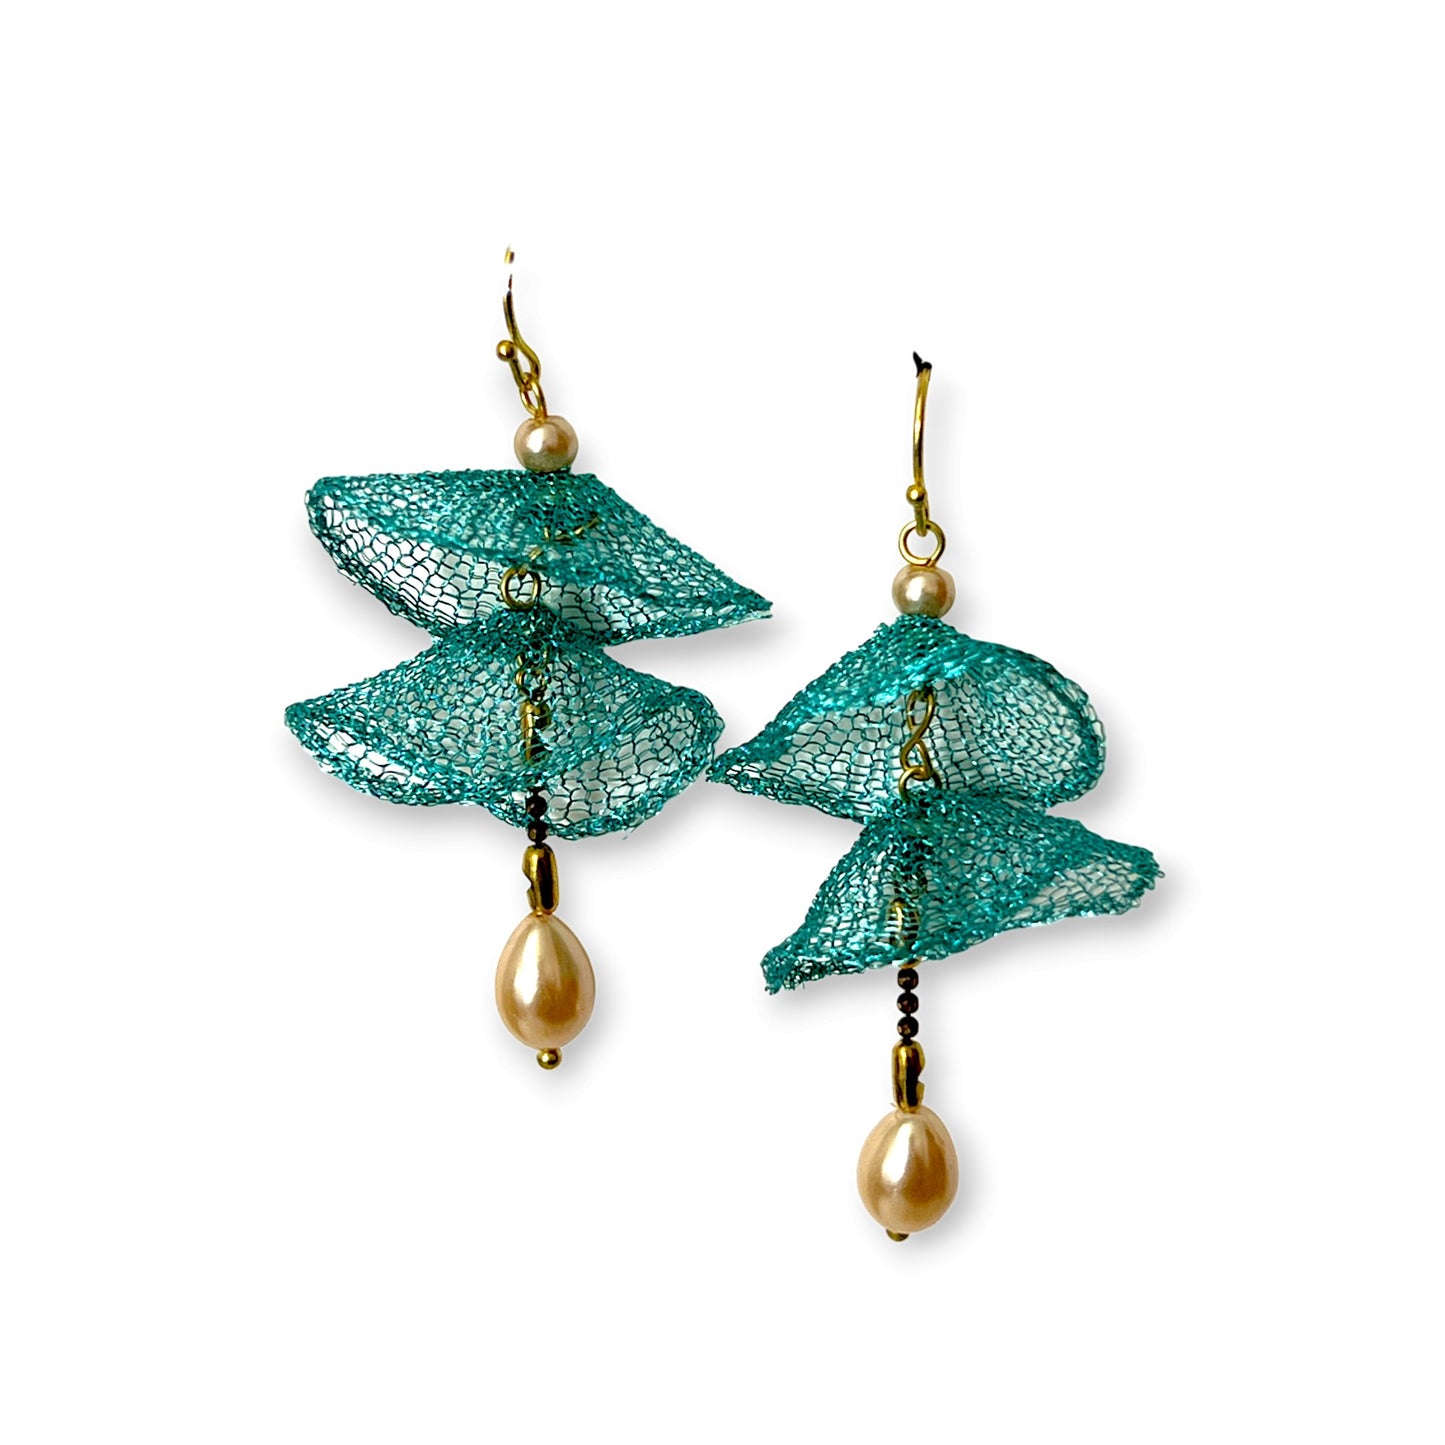 Underwater freshwater pearl drop statement earrings - Sundara Joon